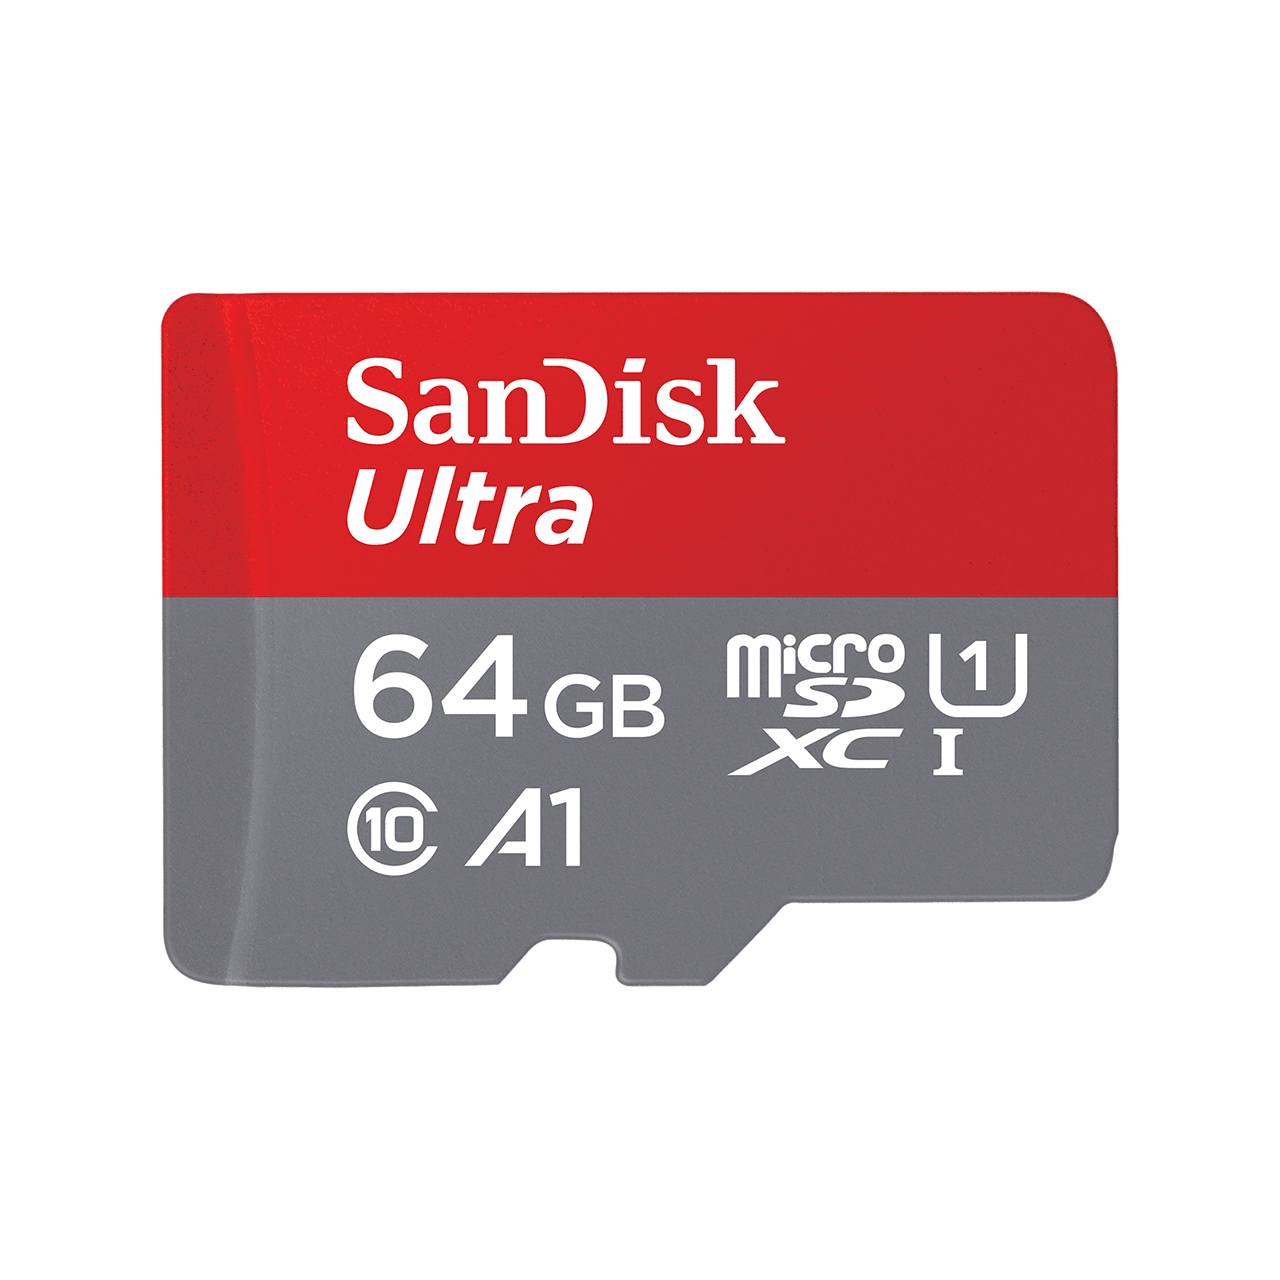 SanDisk Ultra microSD Speicherkarte 64 GB MicroSDXC UHS-I Klasse 10 (SDSQUA4-064G-GN6TA)